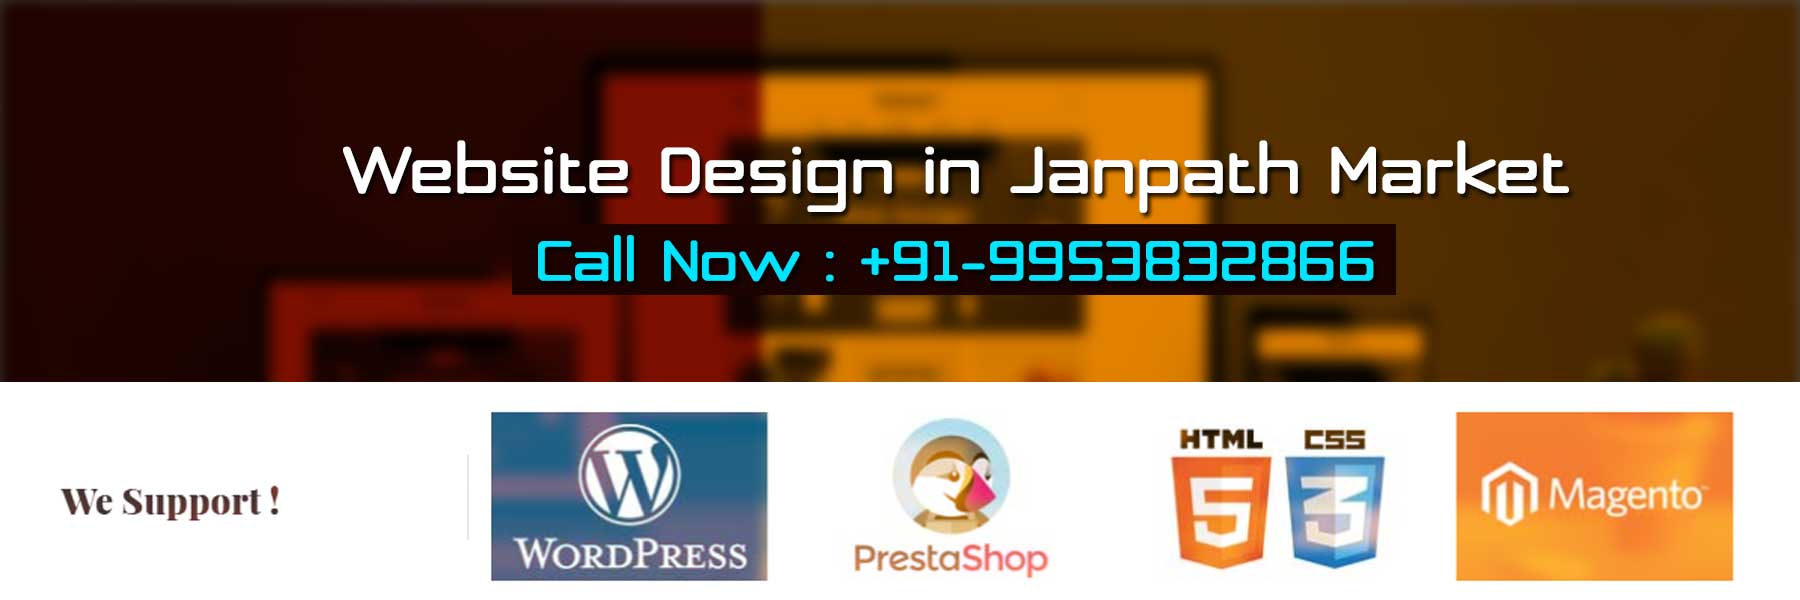 Website Design in Janpath Market